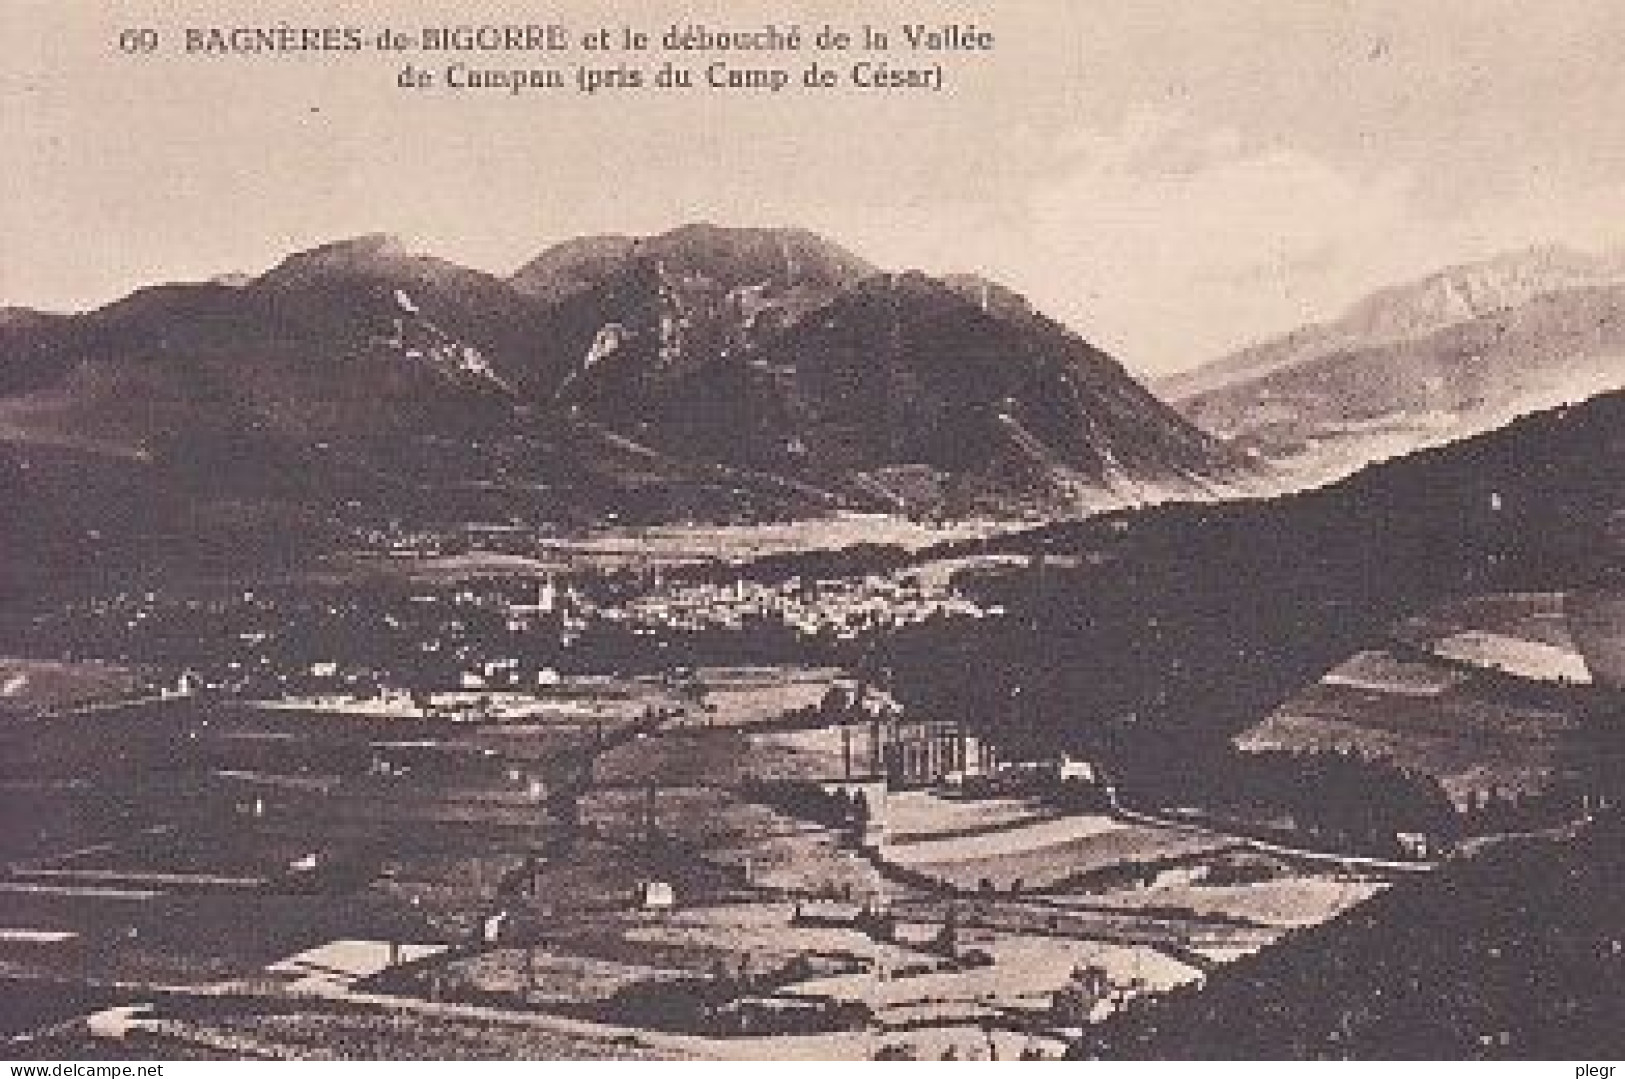 3-65059 01 45 - BAGNERES DE BIGORRE * - DEBOUCHE DE LA VALLEE DE CAMPAN - Bagneres De Bigorre